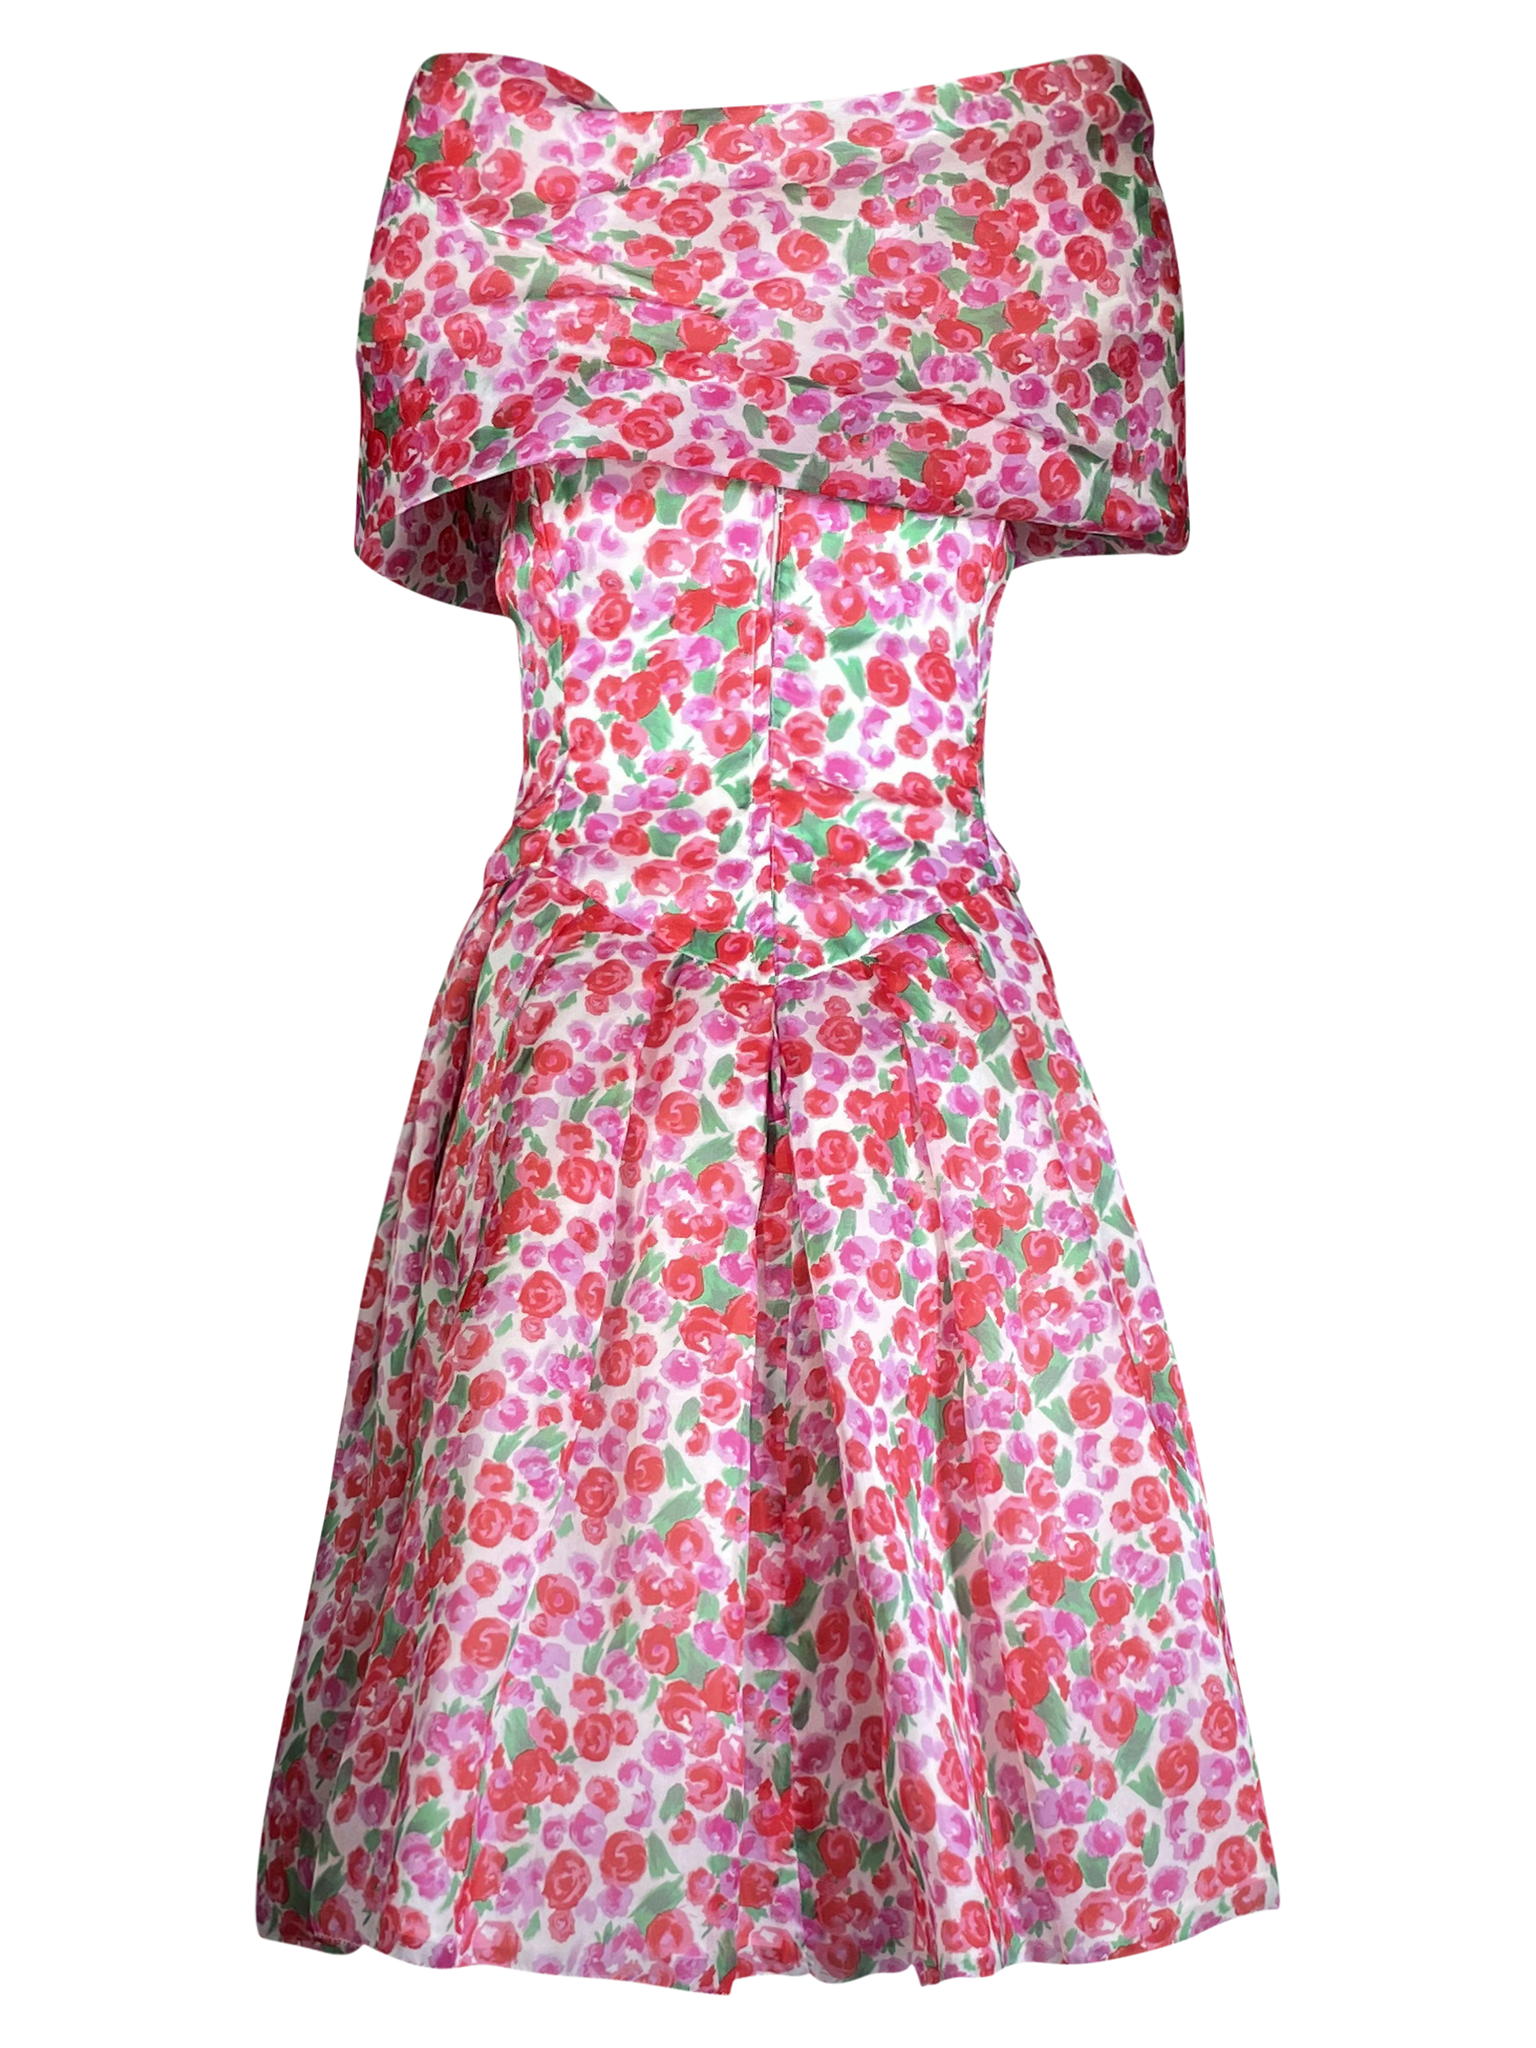 Albert Nipton Original Floral Dress